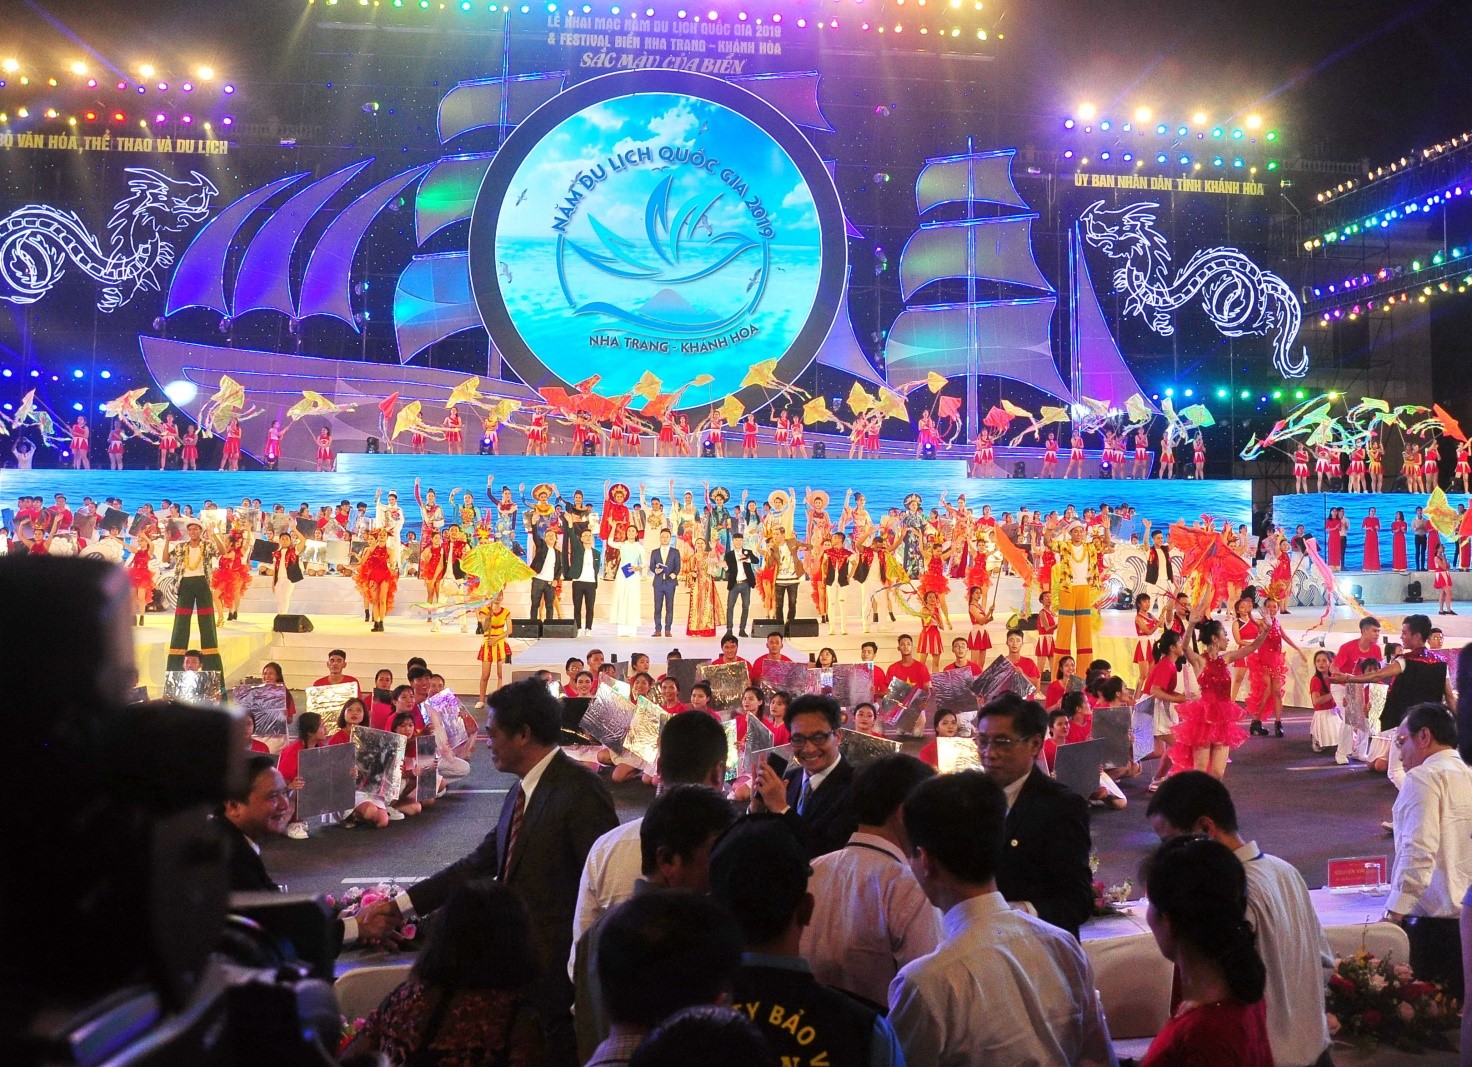 Phó Thủ tướng Vũ Đức Đam dự khai mạc Festival Biển Nha Trang